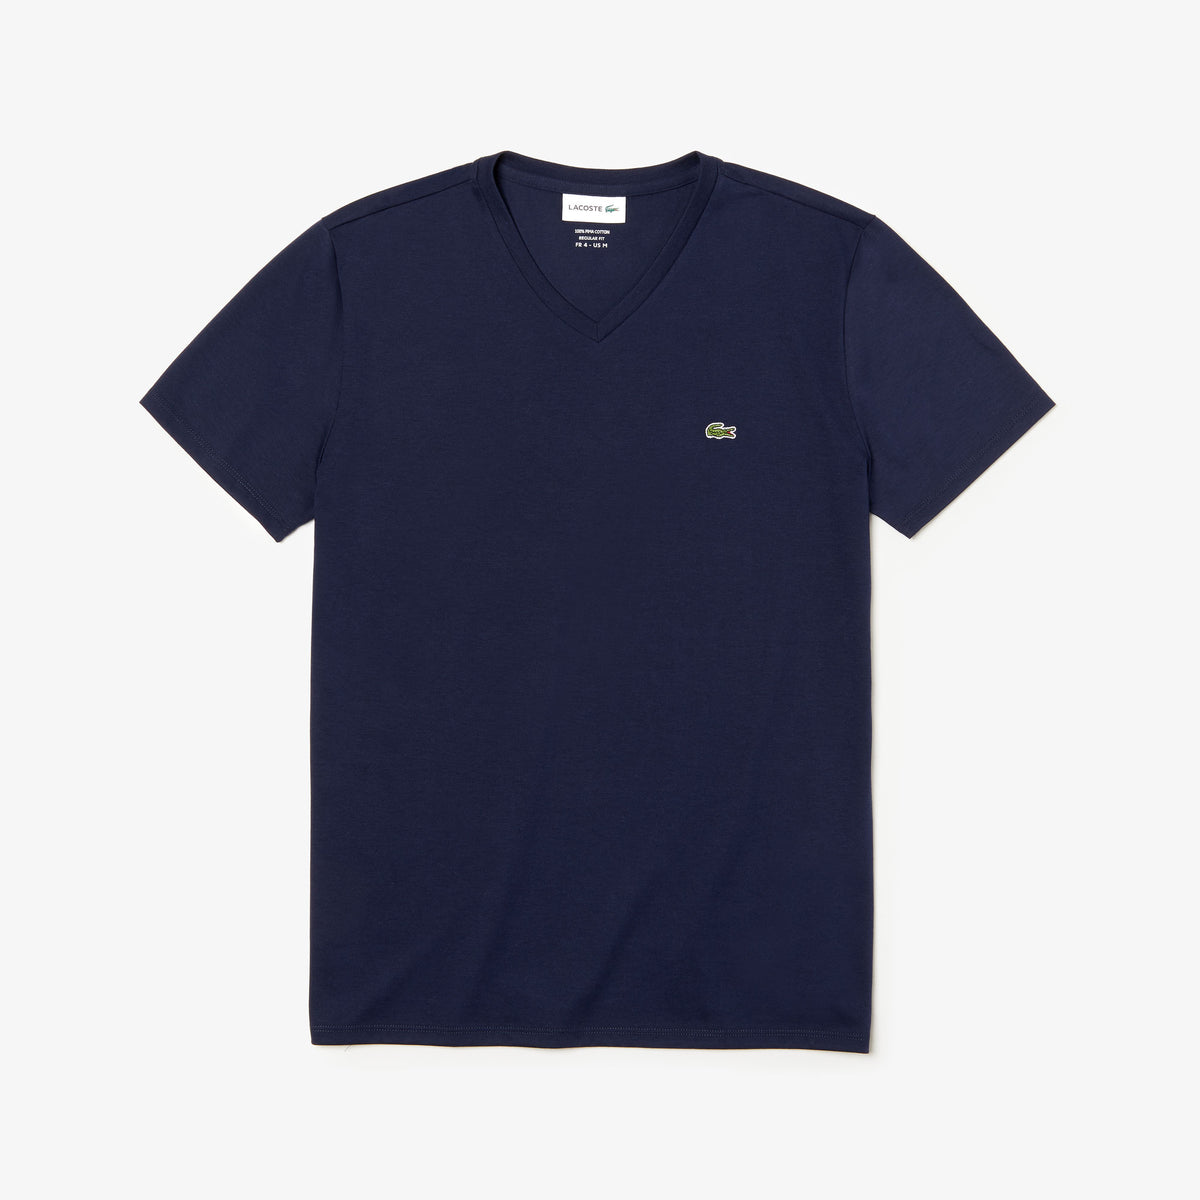 Men's V-neck Pima Cotton Jersey T-shirt - Navy Blue